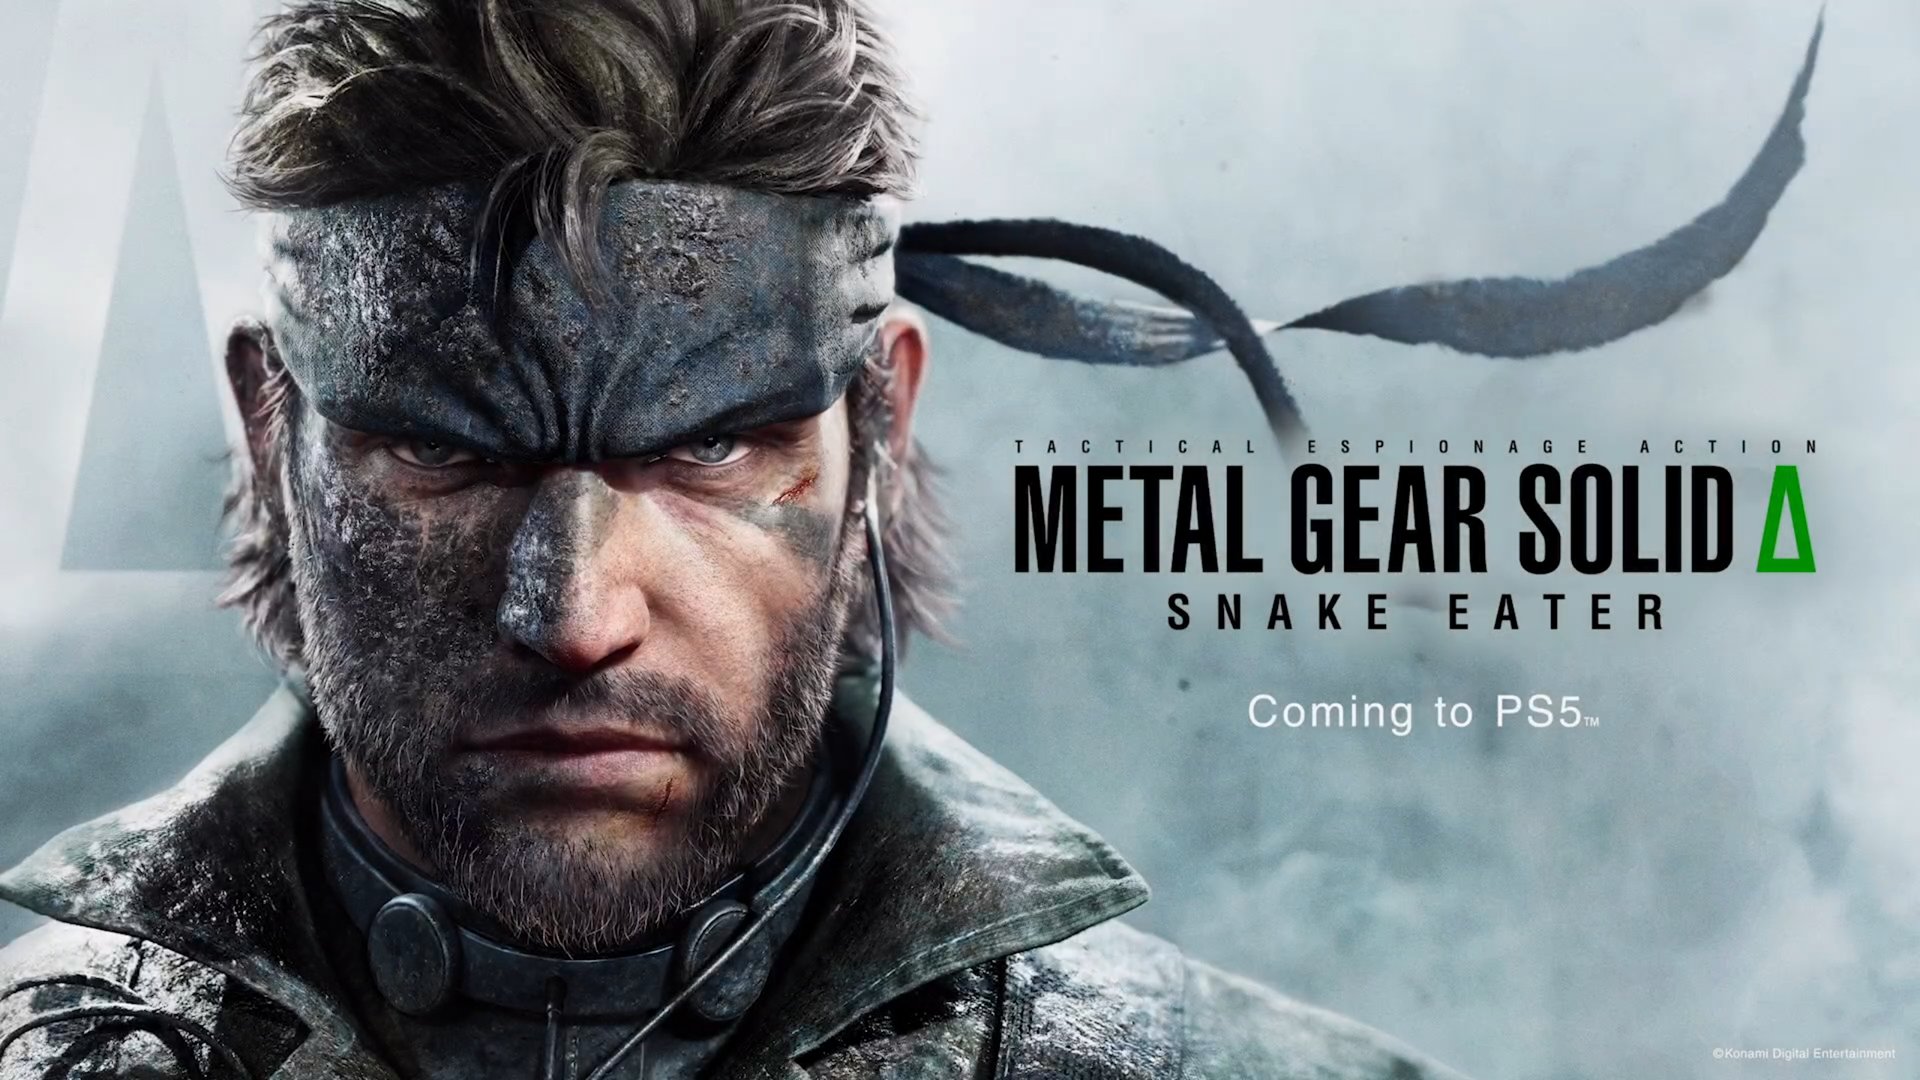 Gears 5 - Official Escape Announcement Trailer